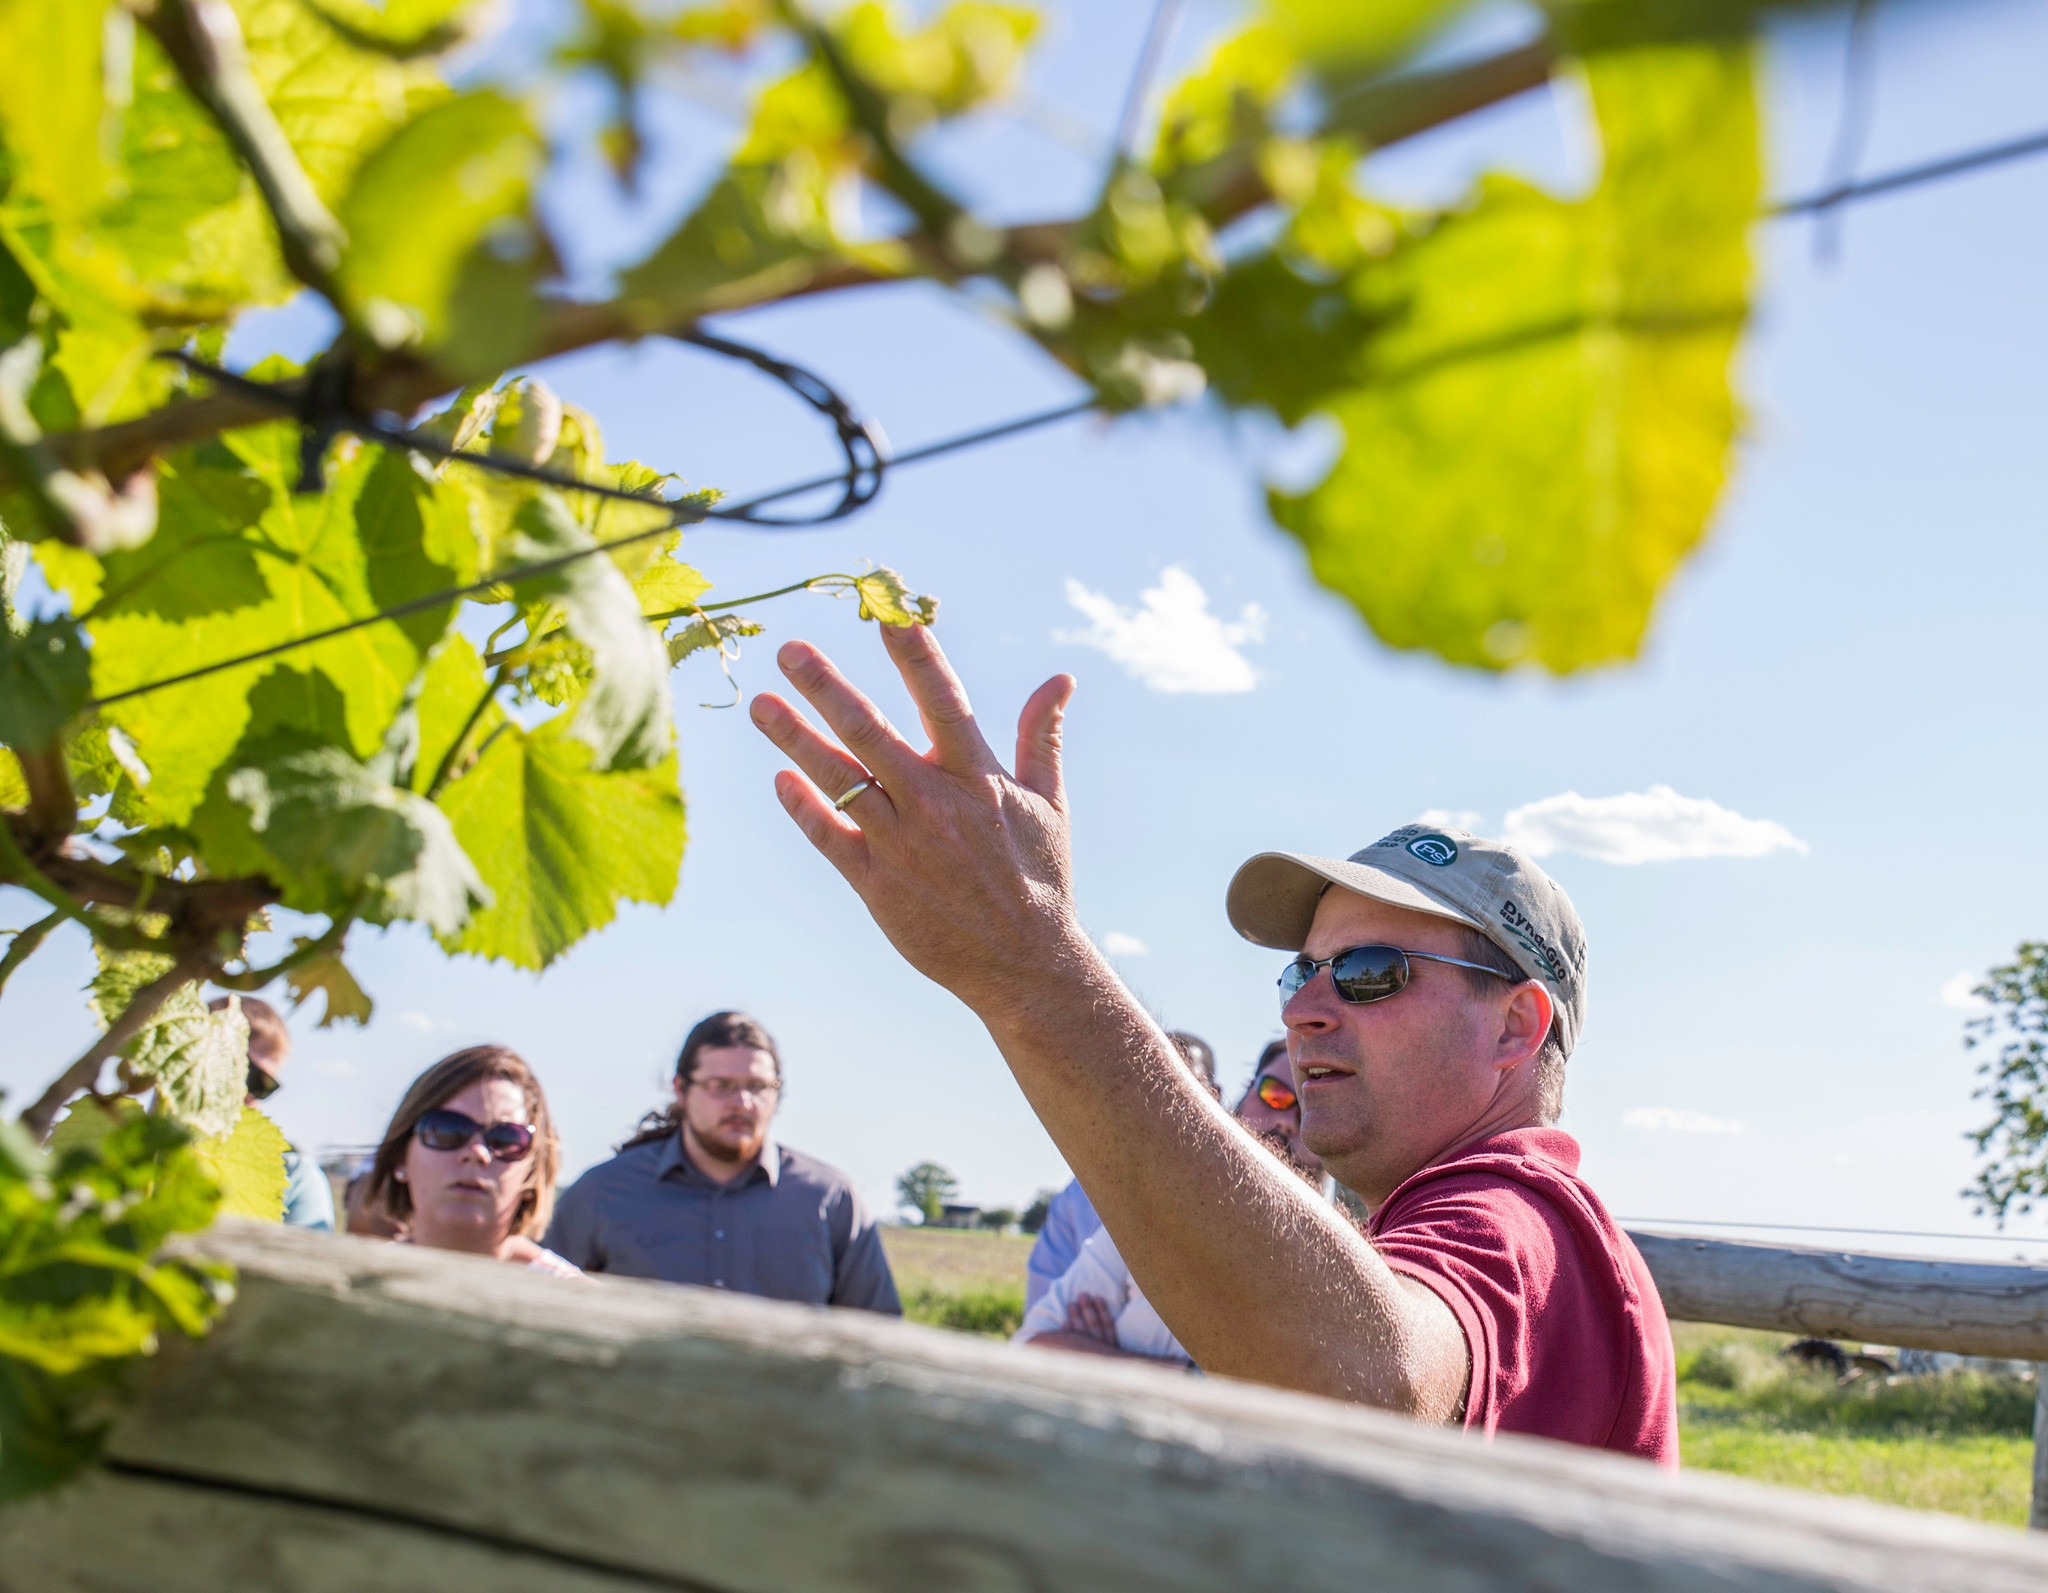 A man points to a grape vine